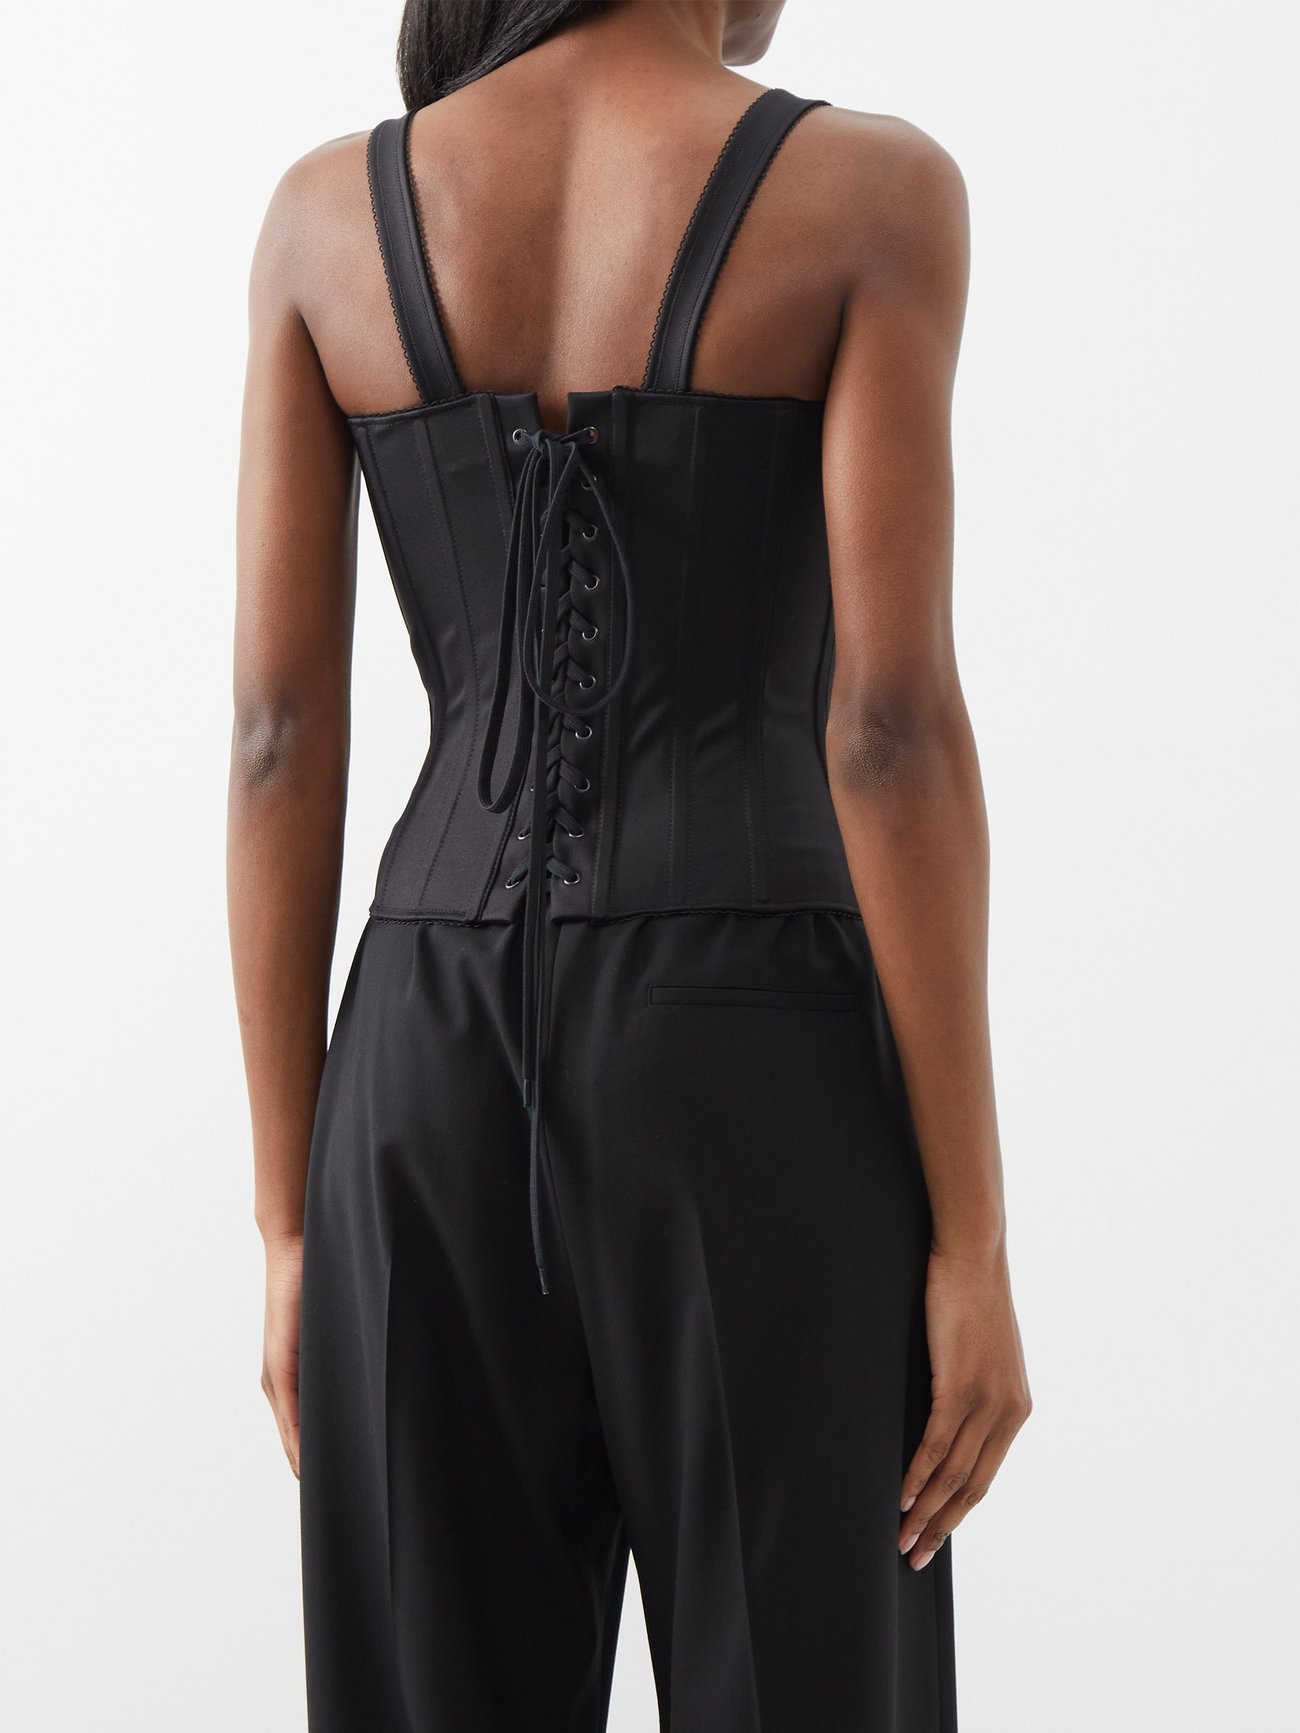 Black Zipped spandex corset top, Balenciaga